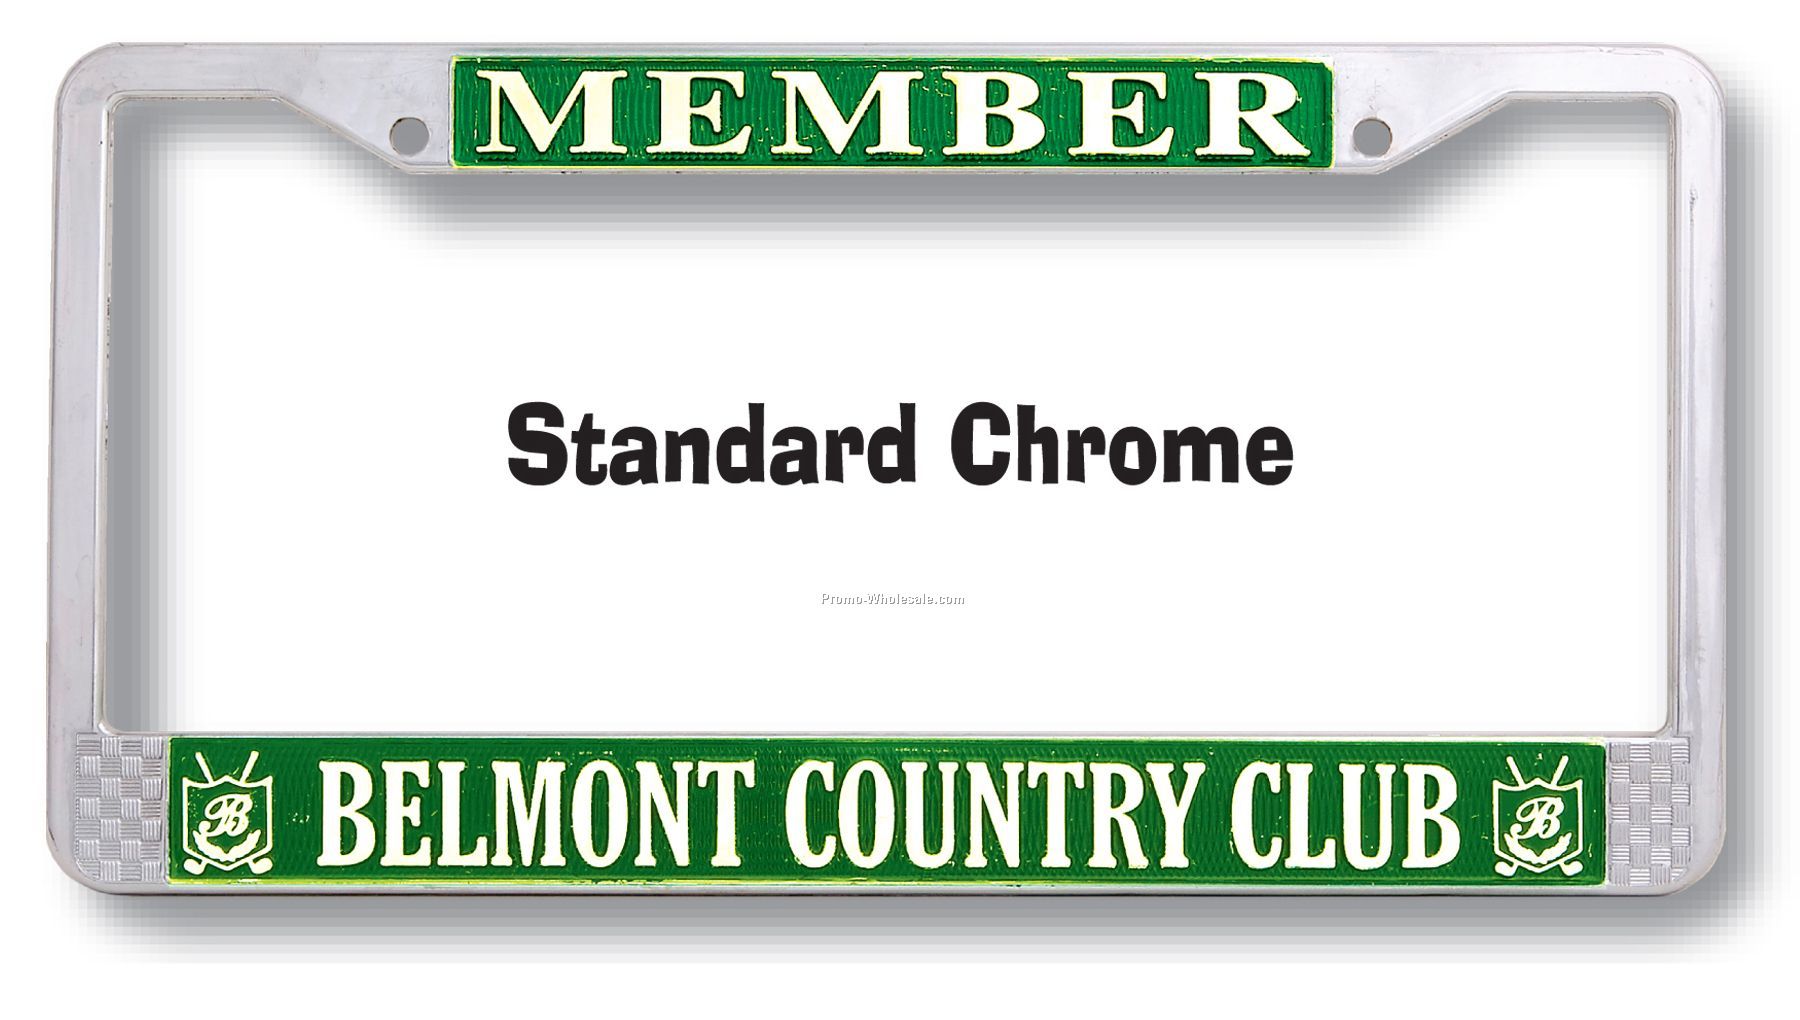 Standard Chrome License Plate Frame